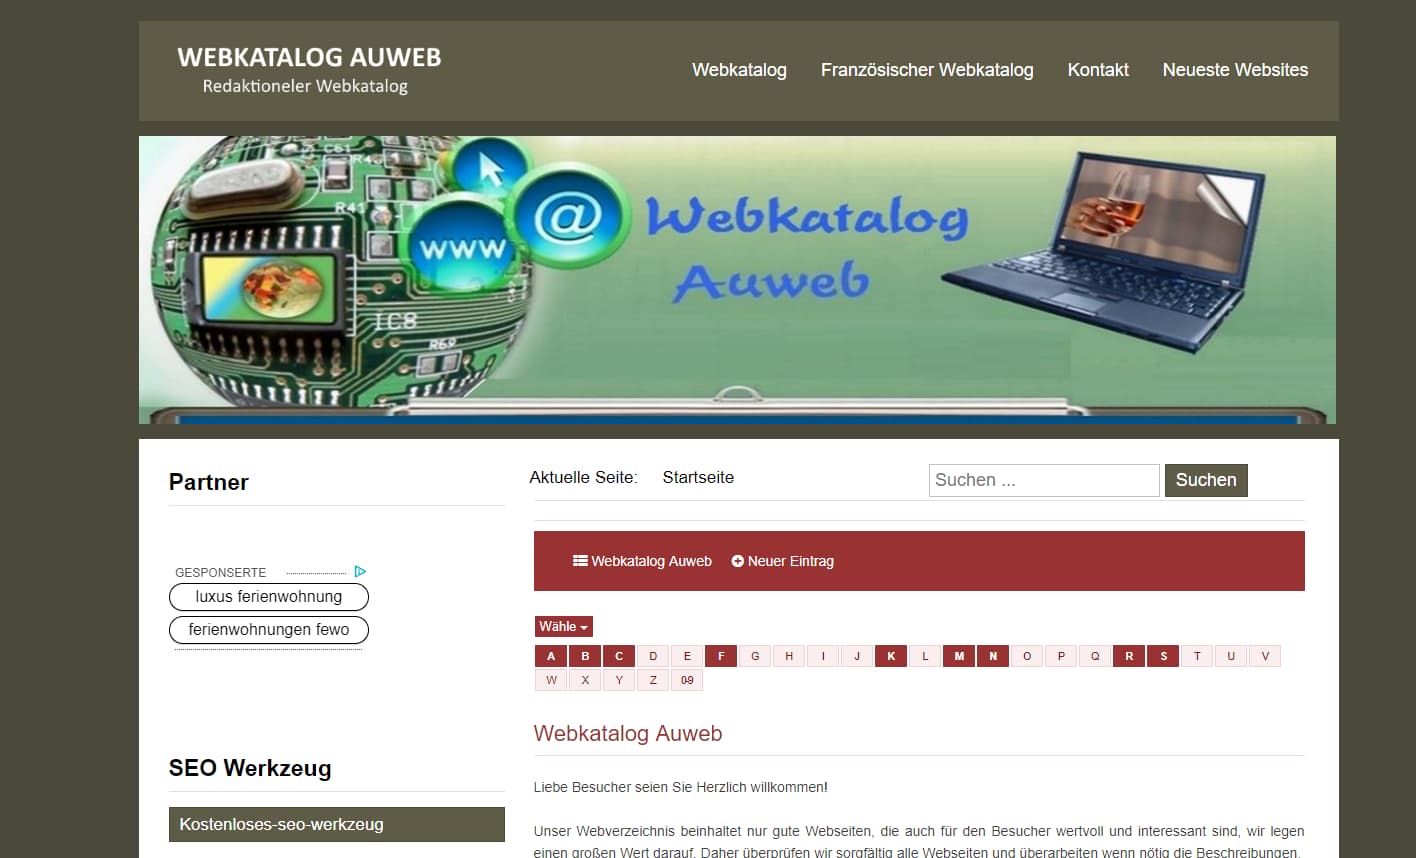 Auweb - Allgemeiner Webkatalog